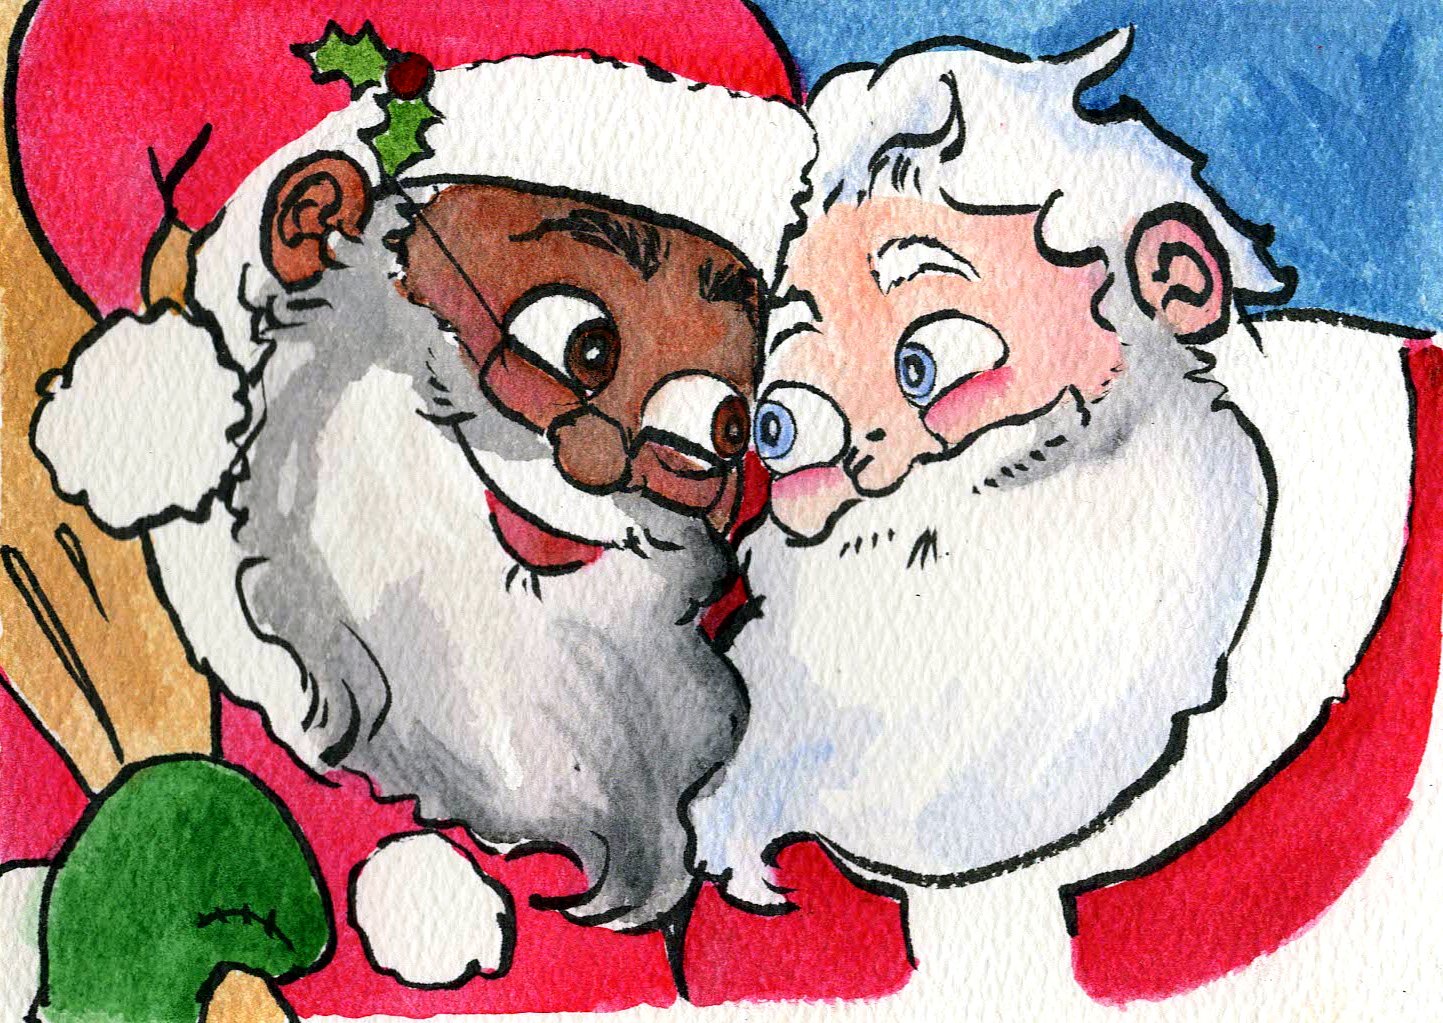 An upcoming book called "Santa's Husband" depicts Santa as a gay man in an interracial relationship.